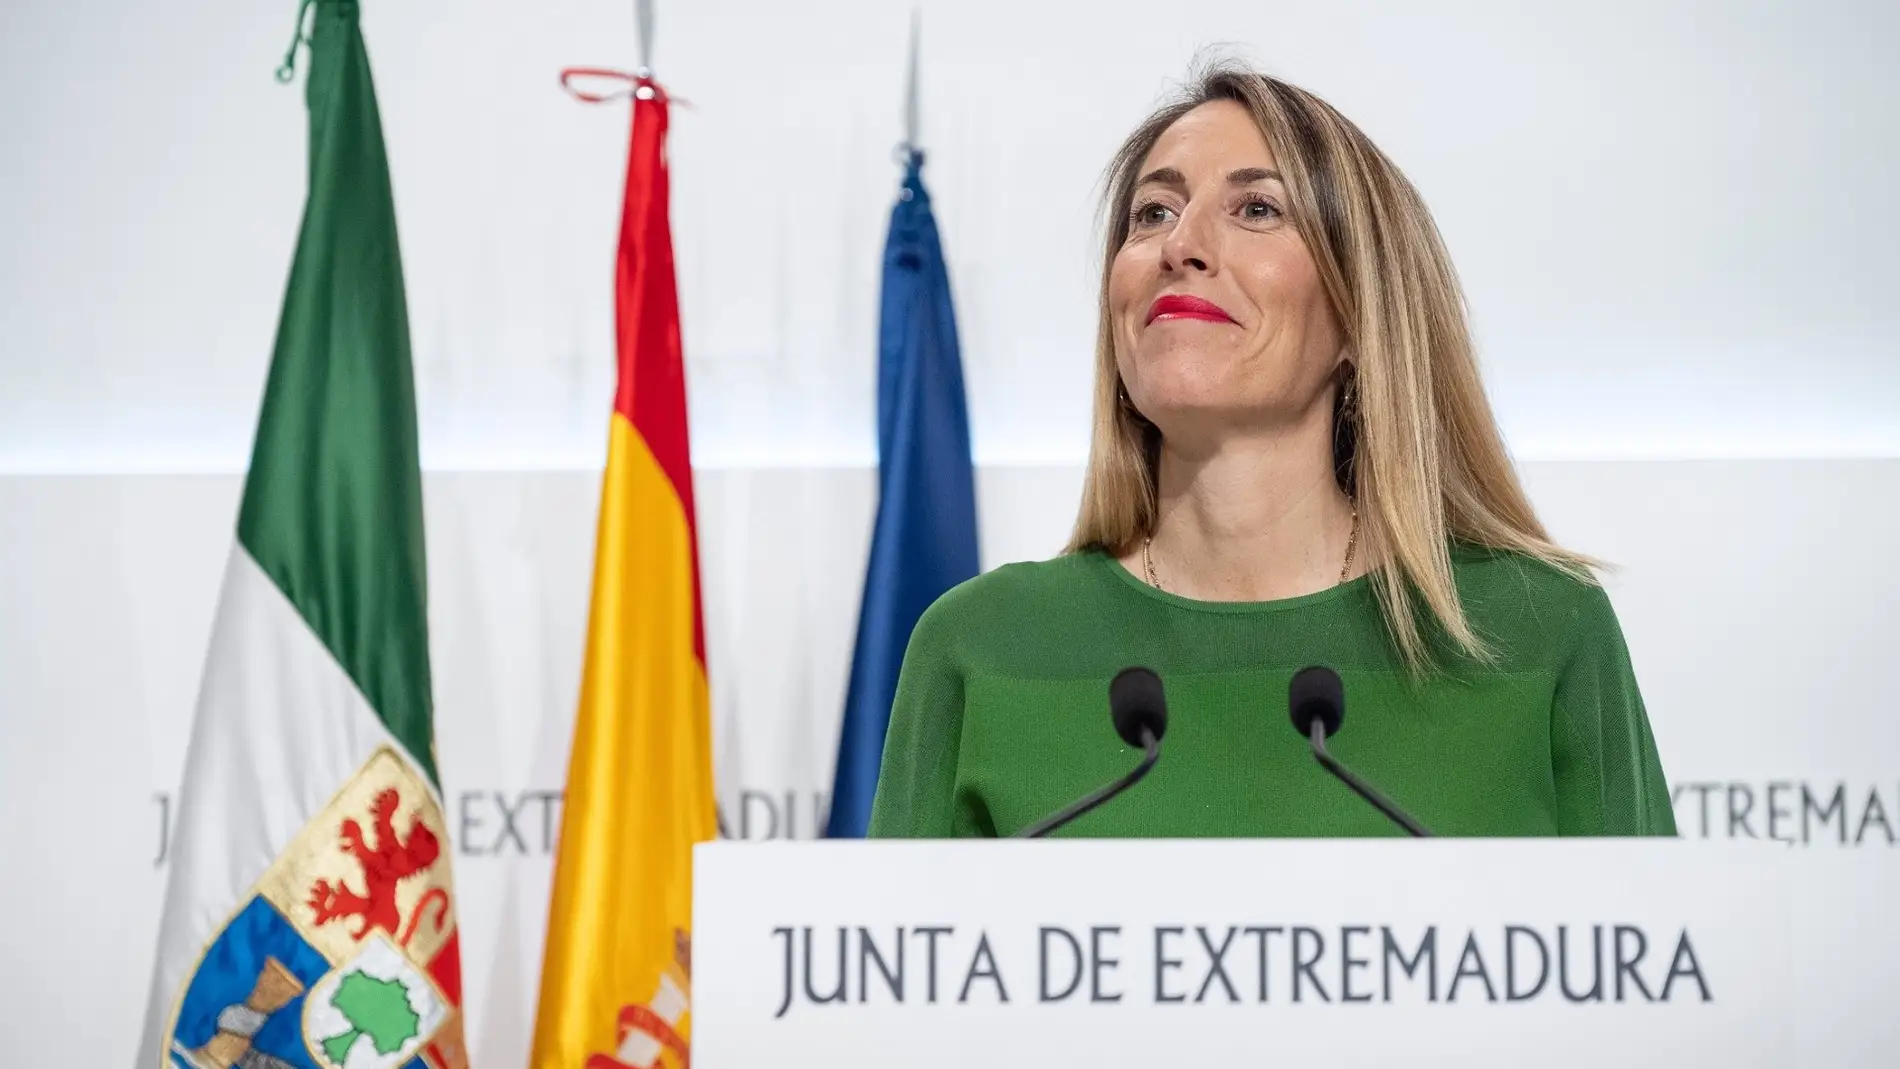 La presidenta extremeña María Guardiola participa este jueves en Madrid en un desayuno informativo organizado por Club Siglo XXI